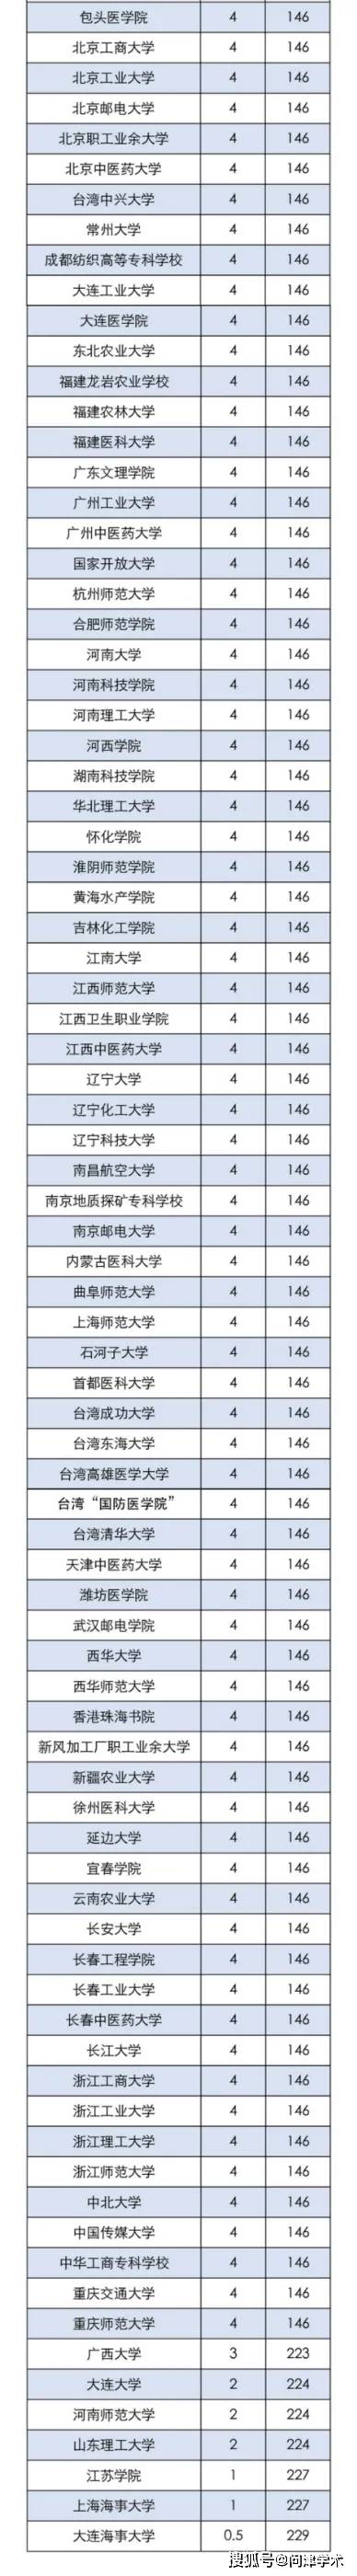 本科教育排行_2021中国高校本科教学质量排行榜(2)